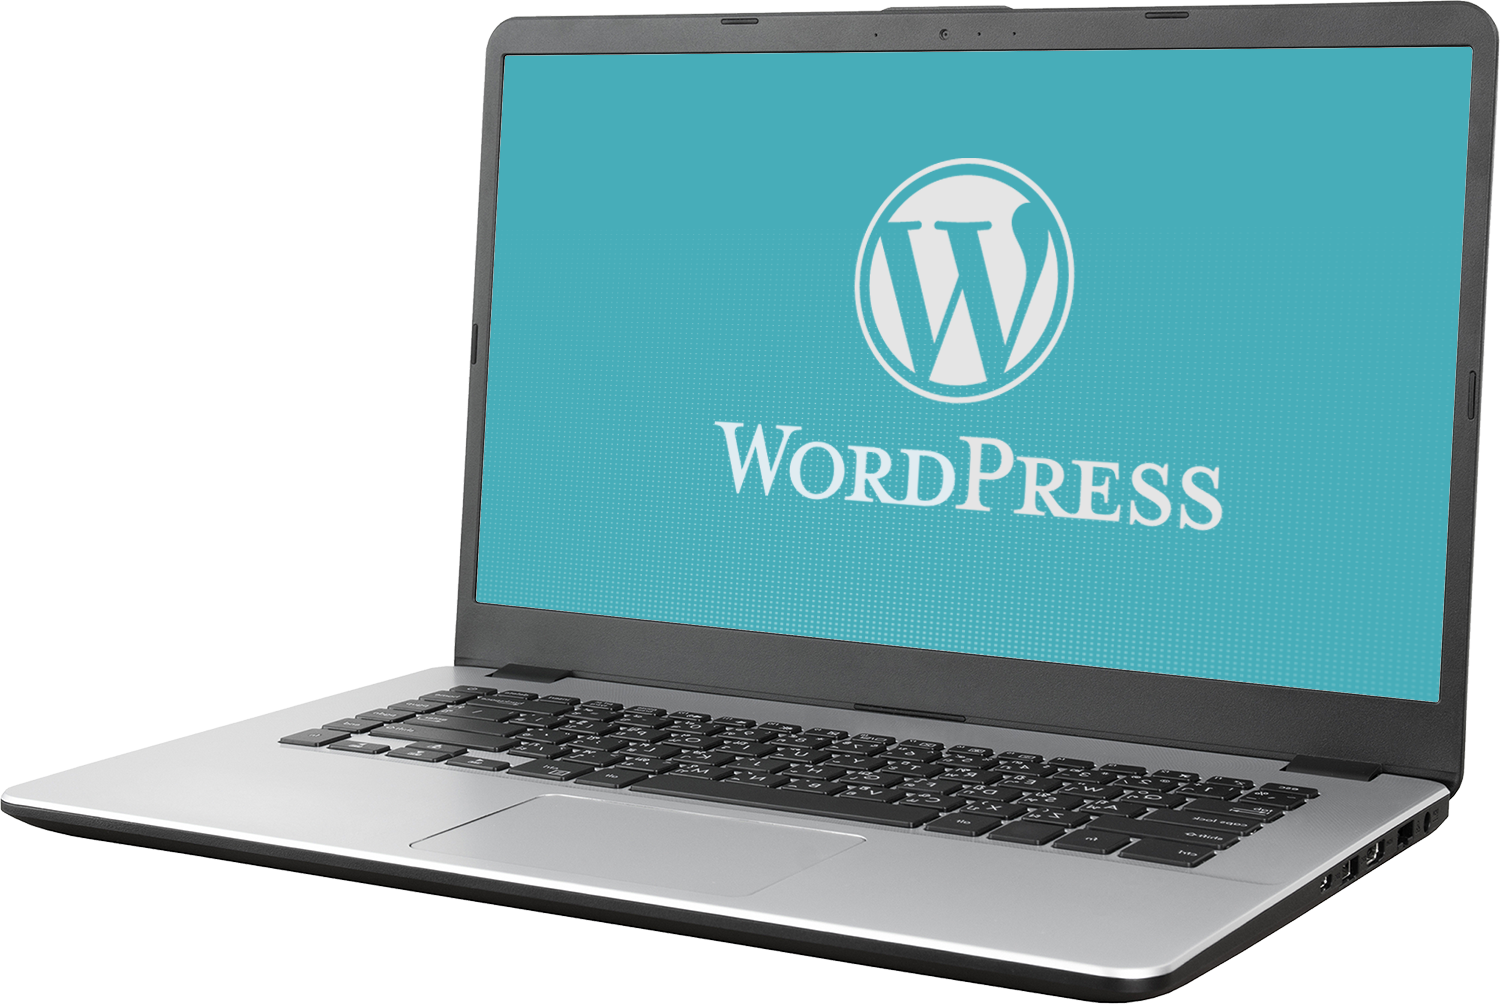 WordPress logo on laptop